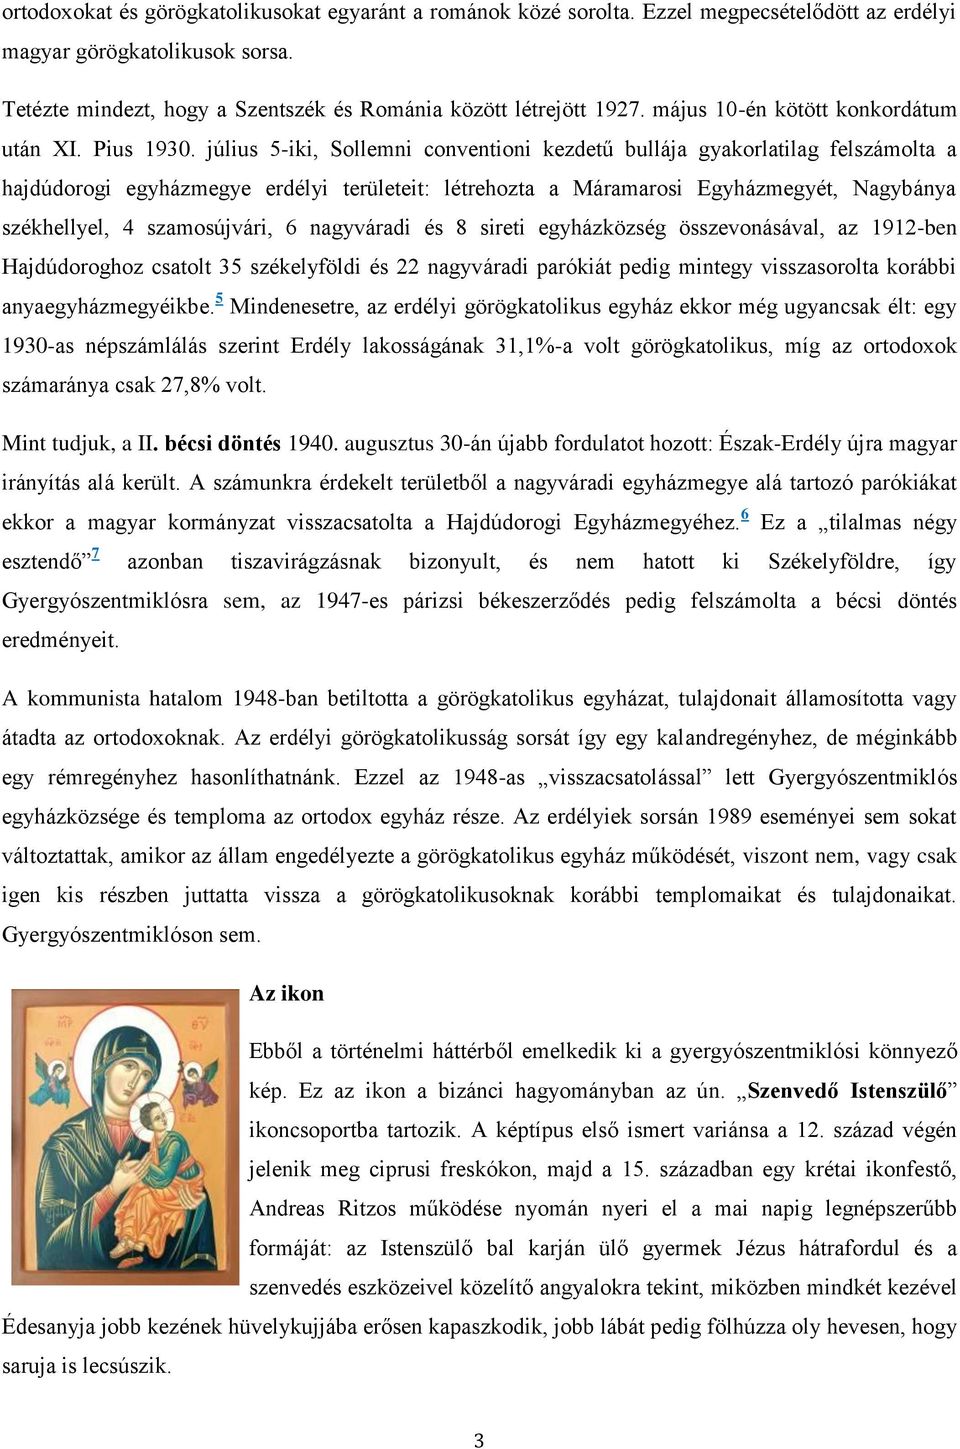 július 5-iki, Sollemni conventioni kezdetű bullája gyakorlatilag felszámolta a hajdúdorogi egyházmegye erdélyi területeit: létrehozta a Máramarosi Egyházmegyét, Nagybánya székhellyel, 4 szamosújvári,